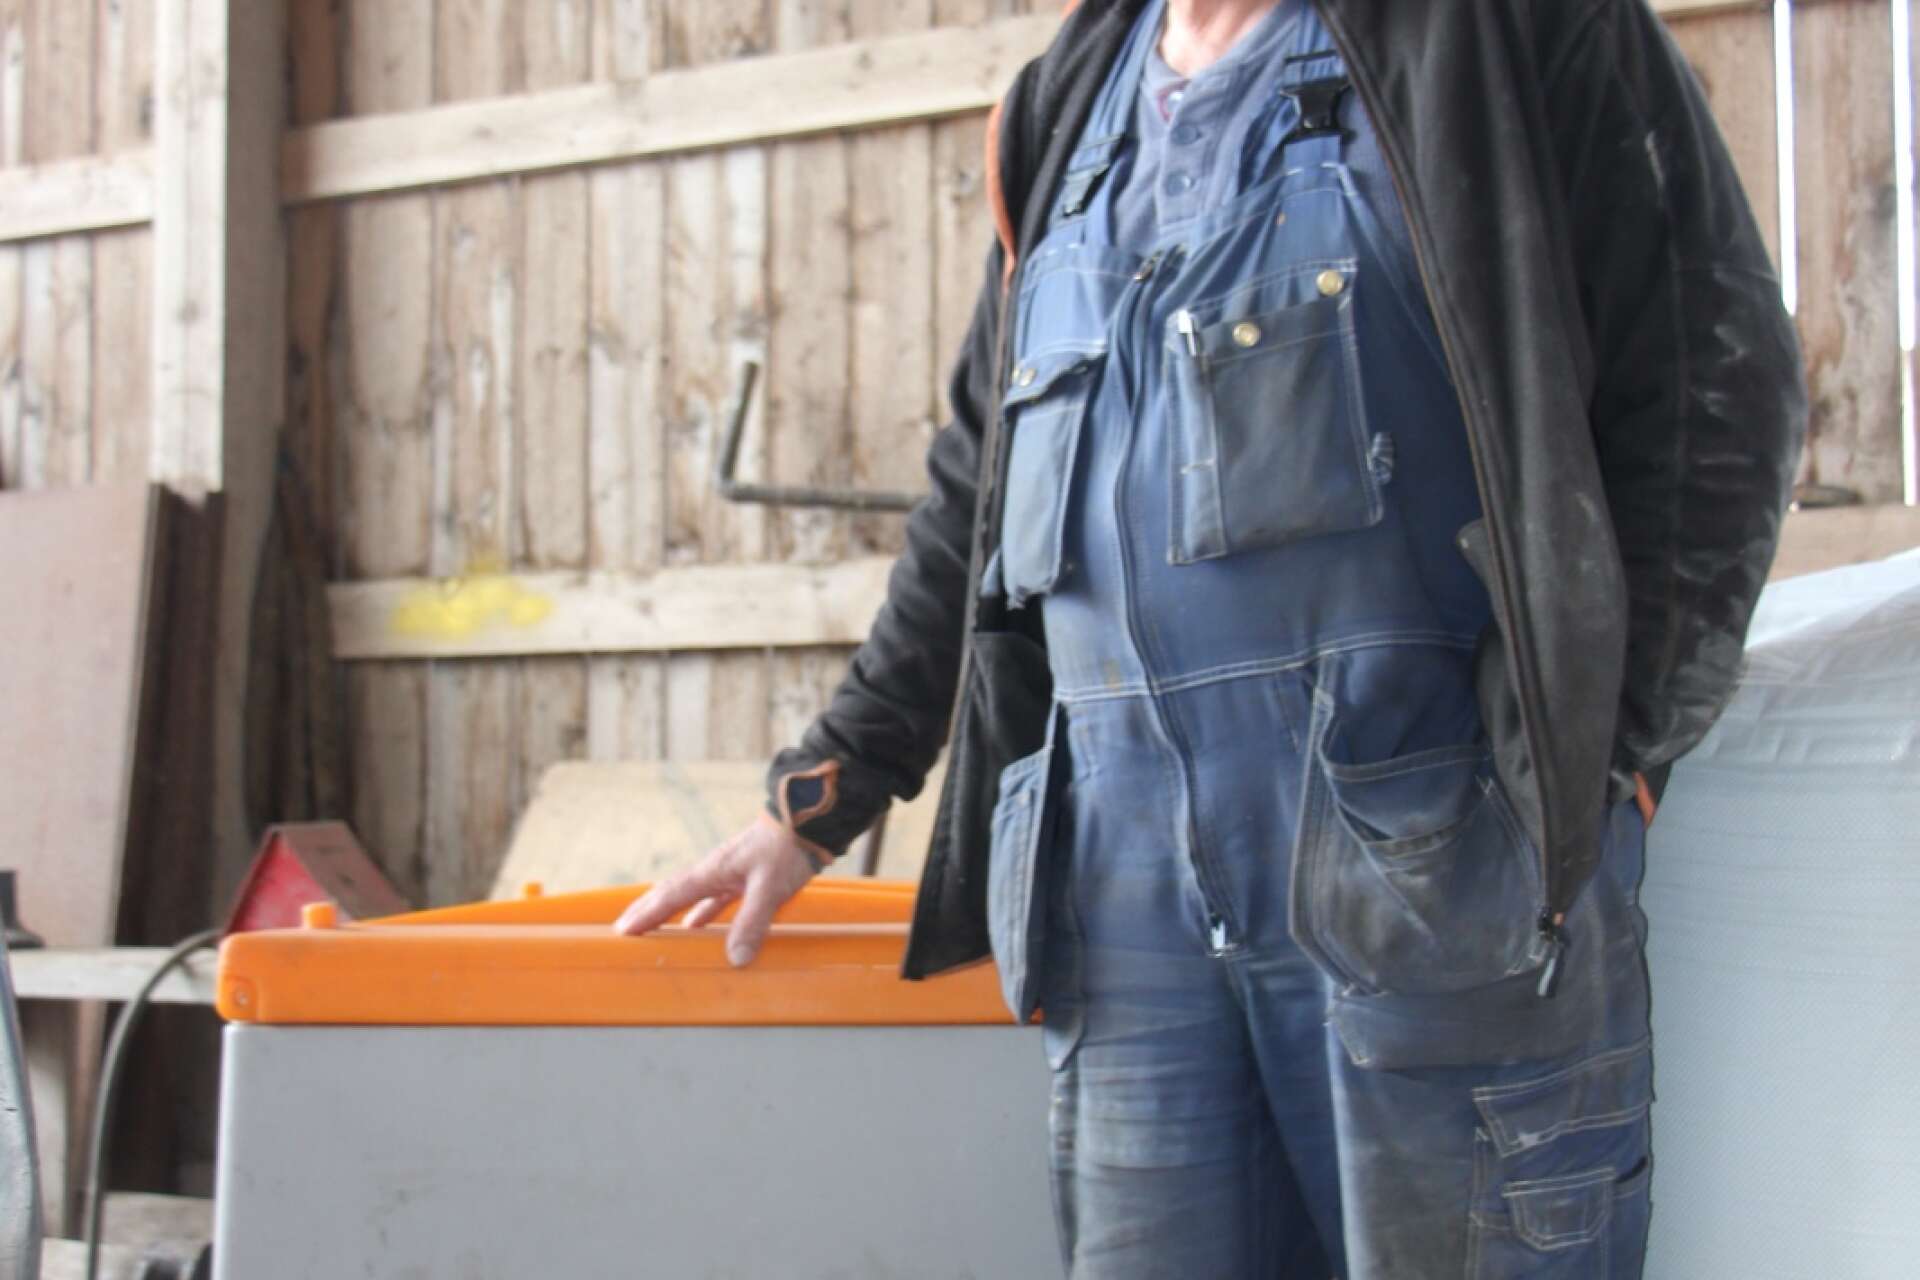 Lennart Bogren visar sin reservdieseltank, den rymmer 400 liter. ”Det är inte klokt, det kostar över tiotusen bara att fylla den här”